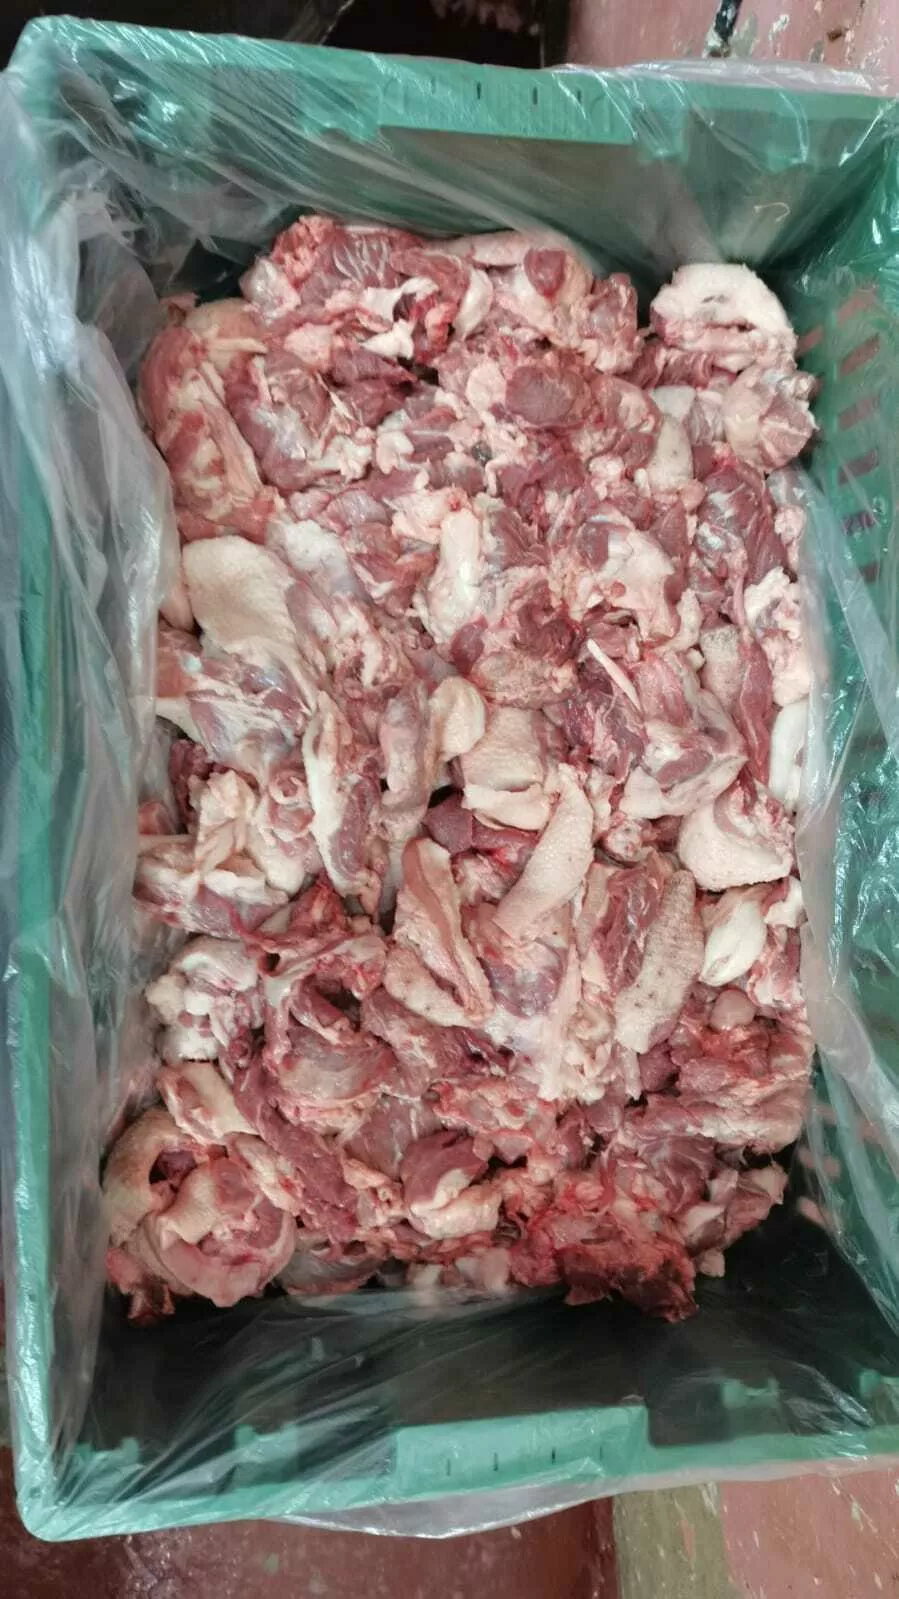 тримминг из мяса свиных голов в Саратове и Саратовской области 2